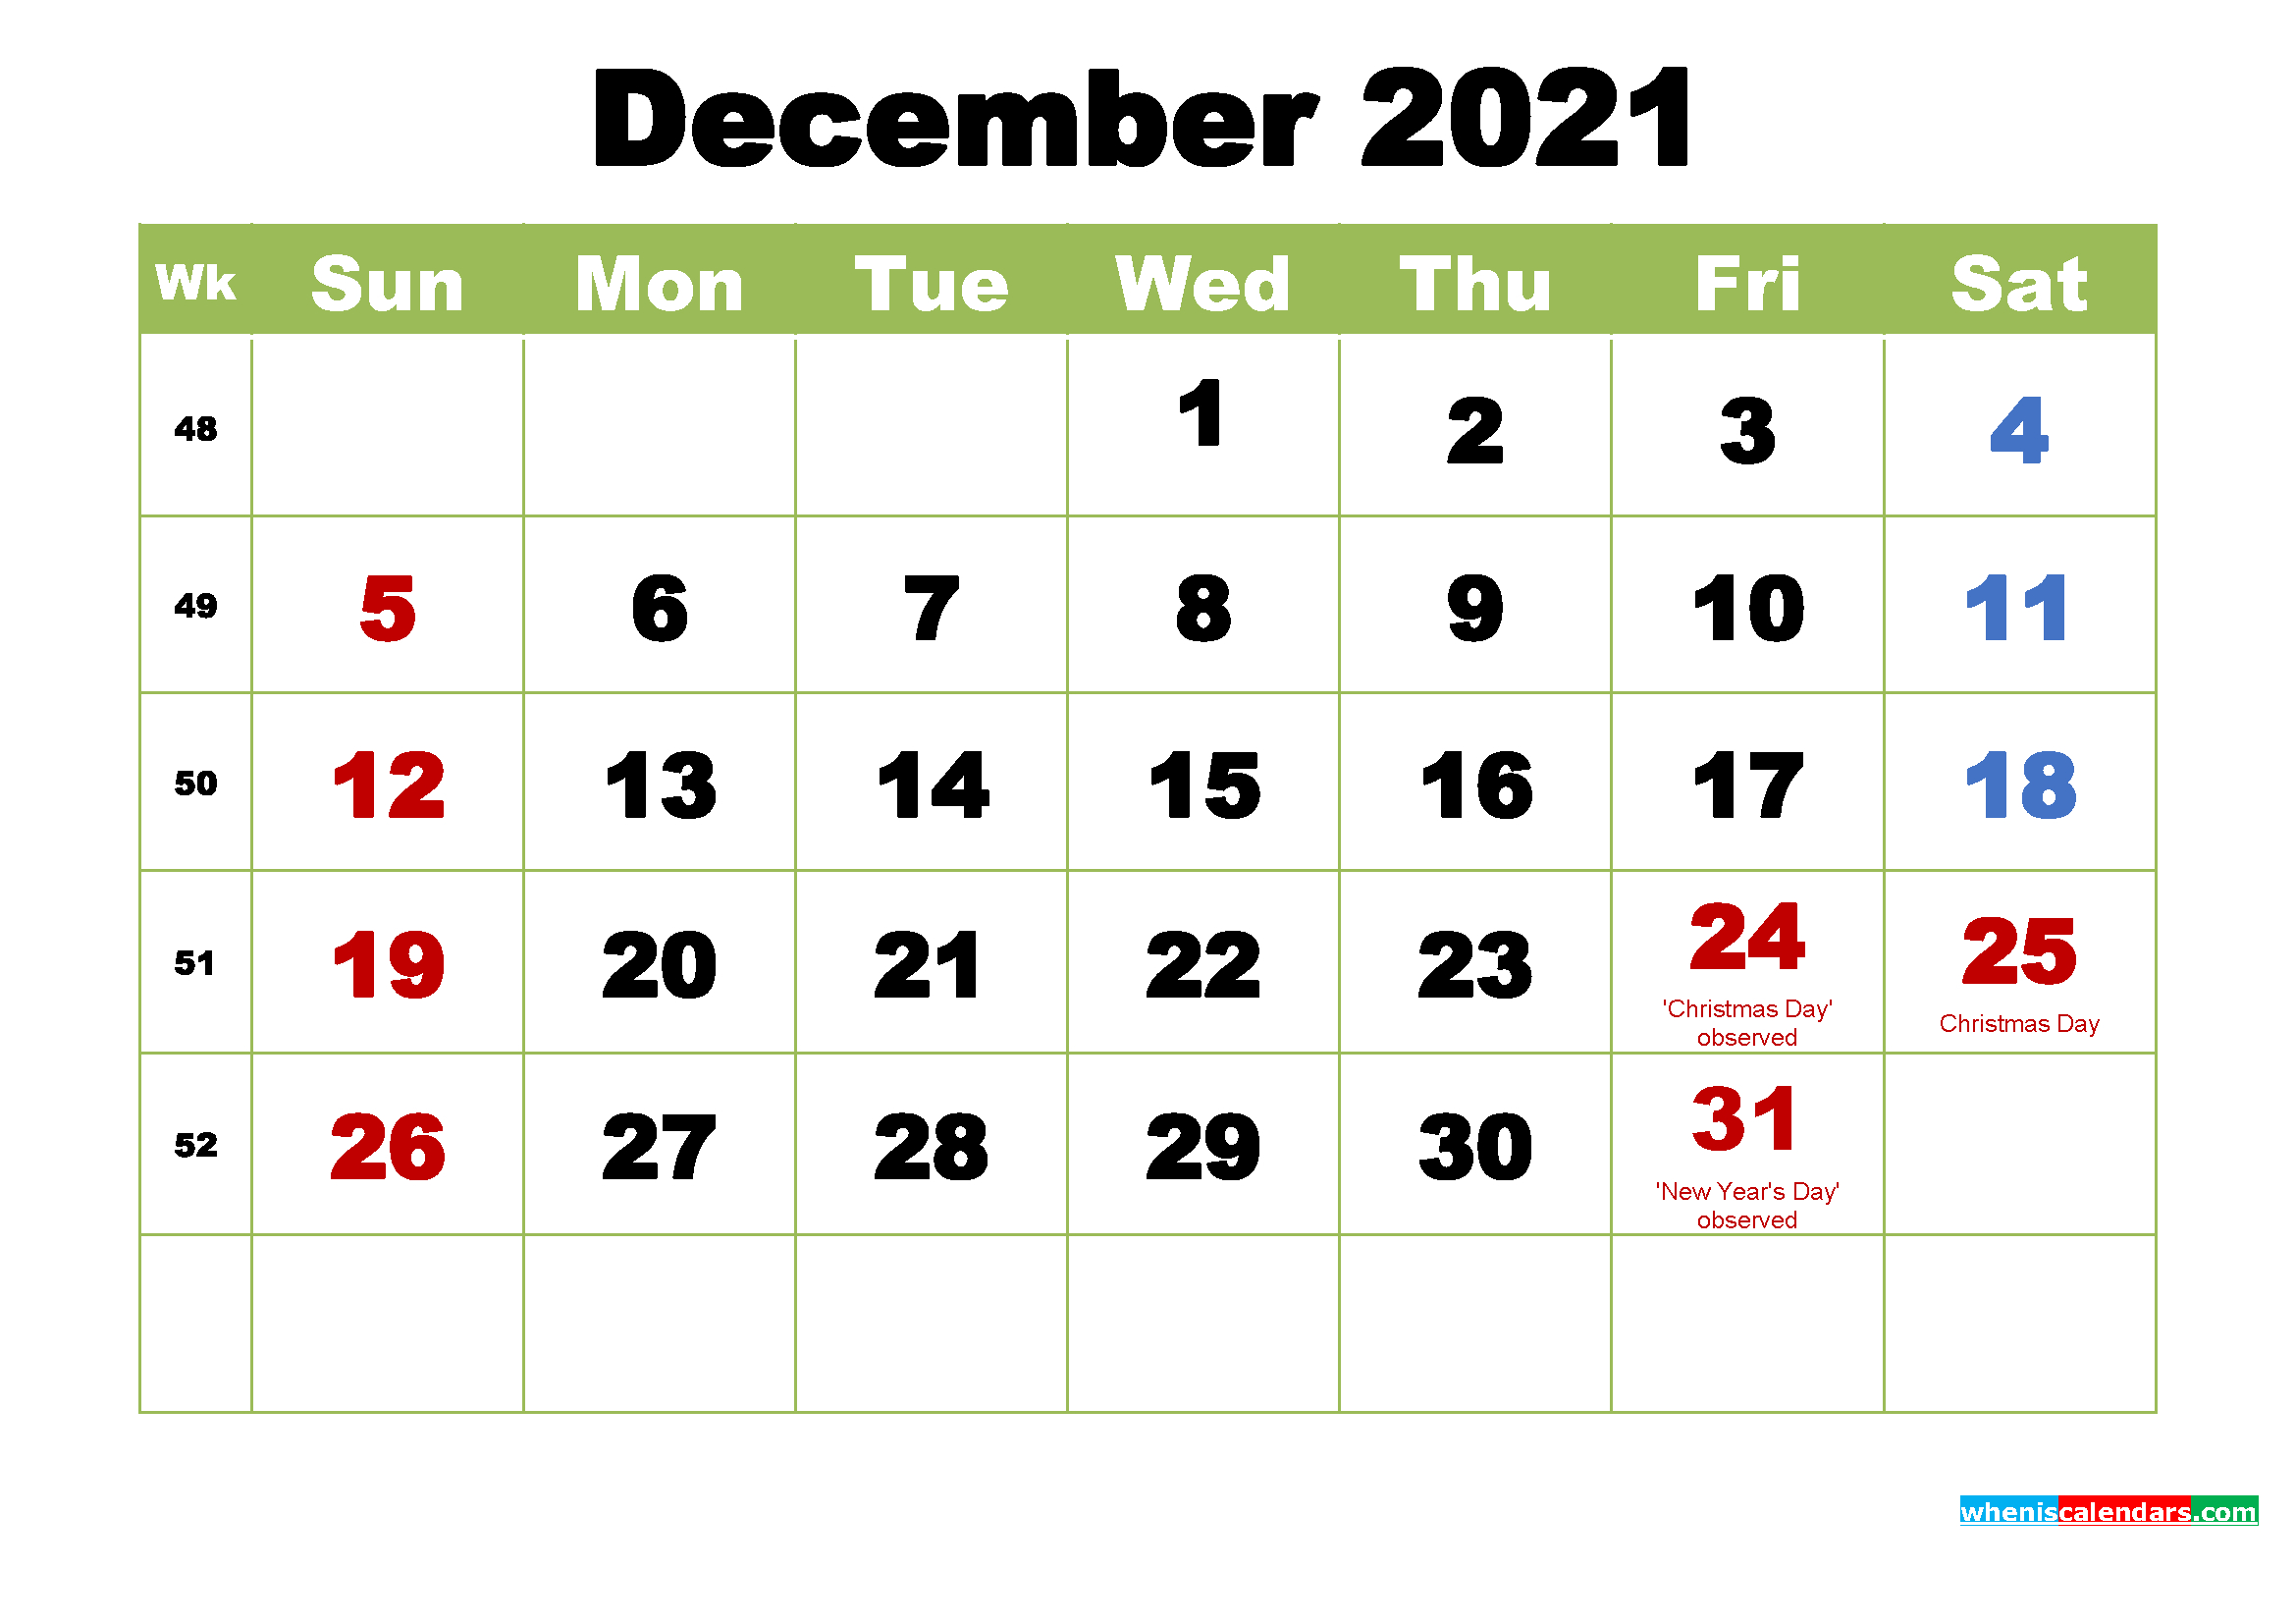 December 2021 Desktop Calendar With Holidays intended for Calendarpedia 2021 Printable Free Us Calendar Landscape